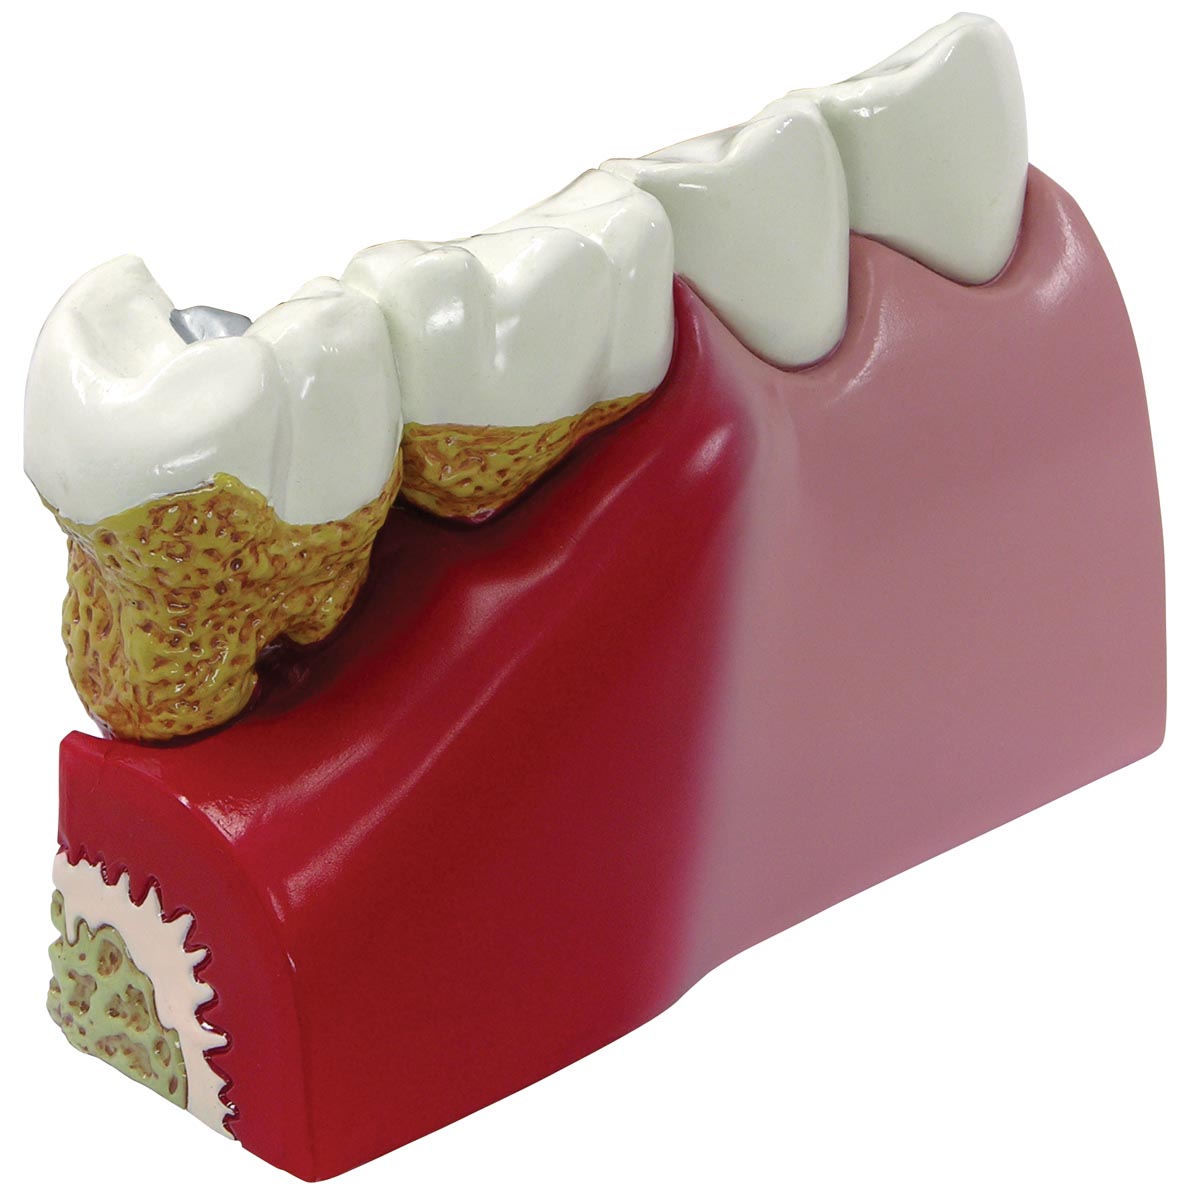 牙周病模型- 1019539 - 2860 - 牙齿模型- 3B Scientific